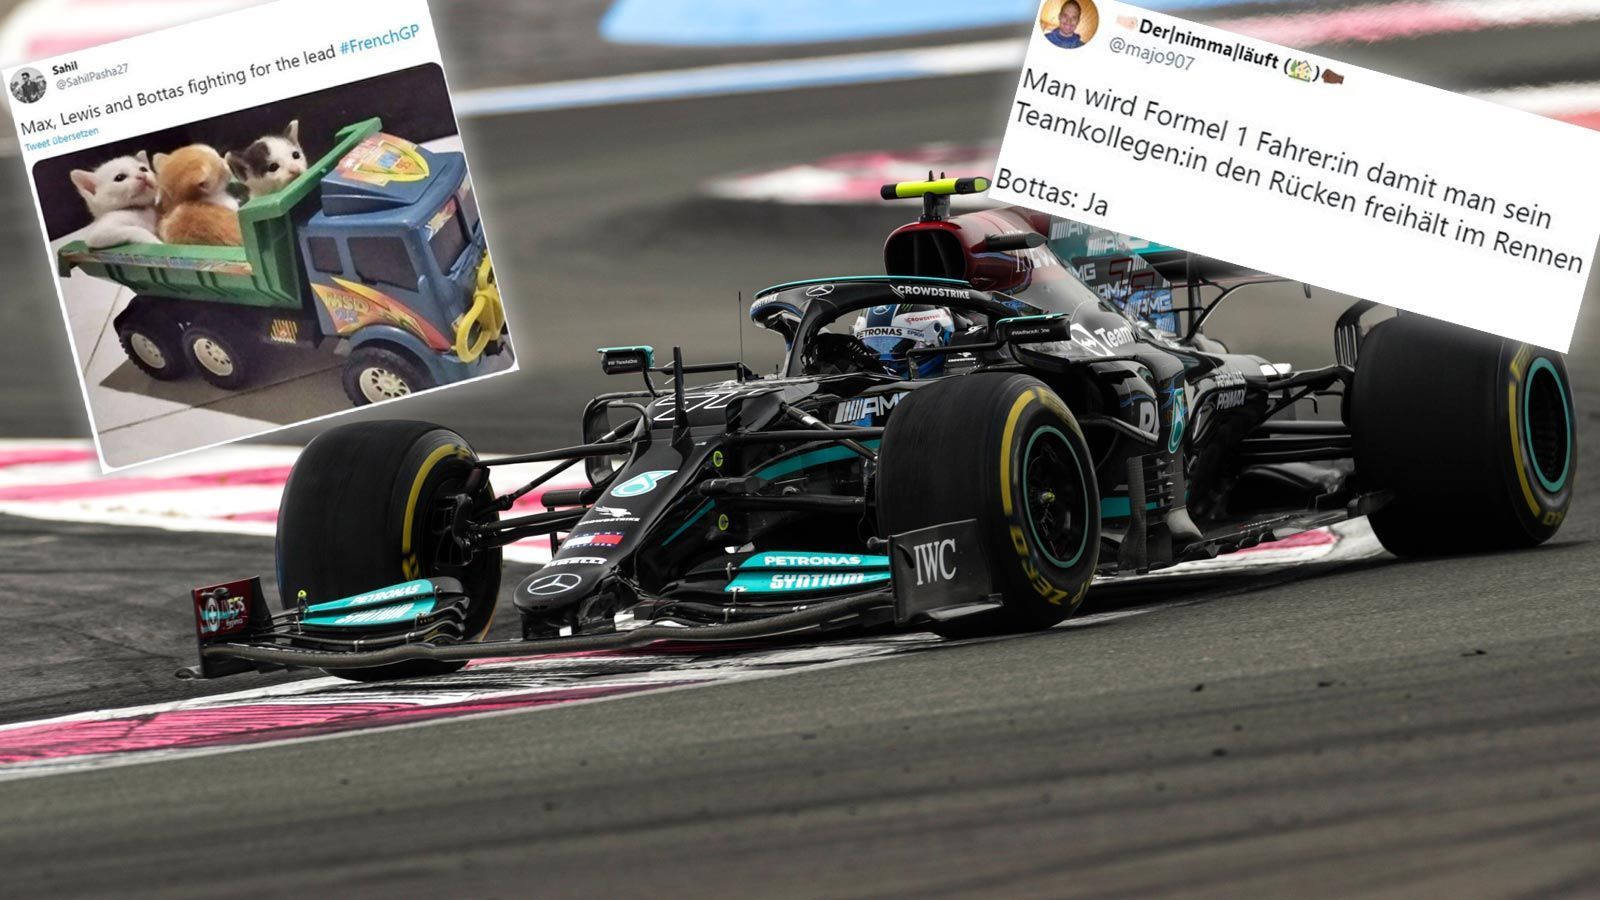 
                <strong>"Bottas hat nix im Mercedes zu suchen": F1-Netzreaktionen</strong><br>
                Der Große Preis von Frankreich geht an Max Verstappen, der damit seine WM-Führung ausbaut. Er setzt sich in einem Krimi vor Lewis Hamilton und Sergio Perez durch. Wir haben die besten Netzreaktionen gesammelt. 
              